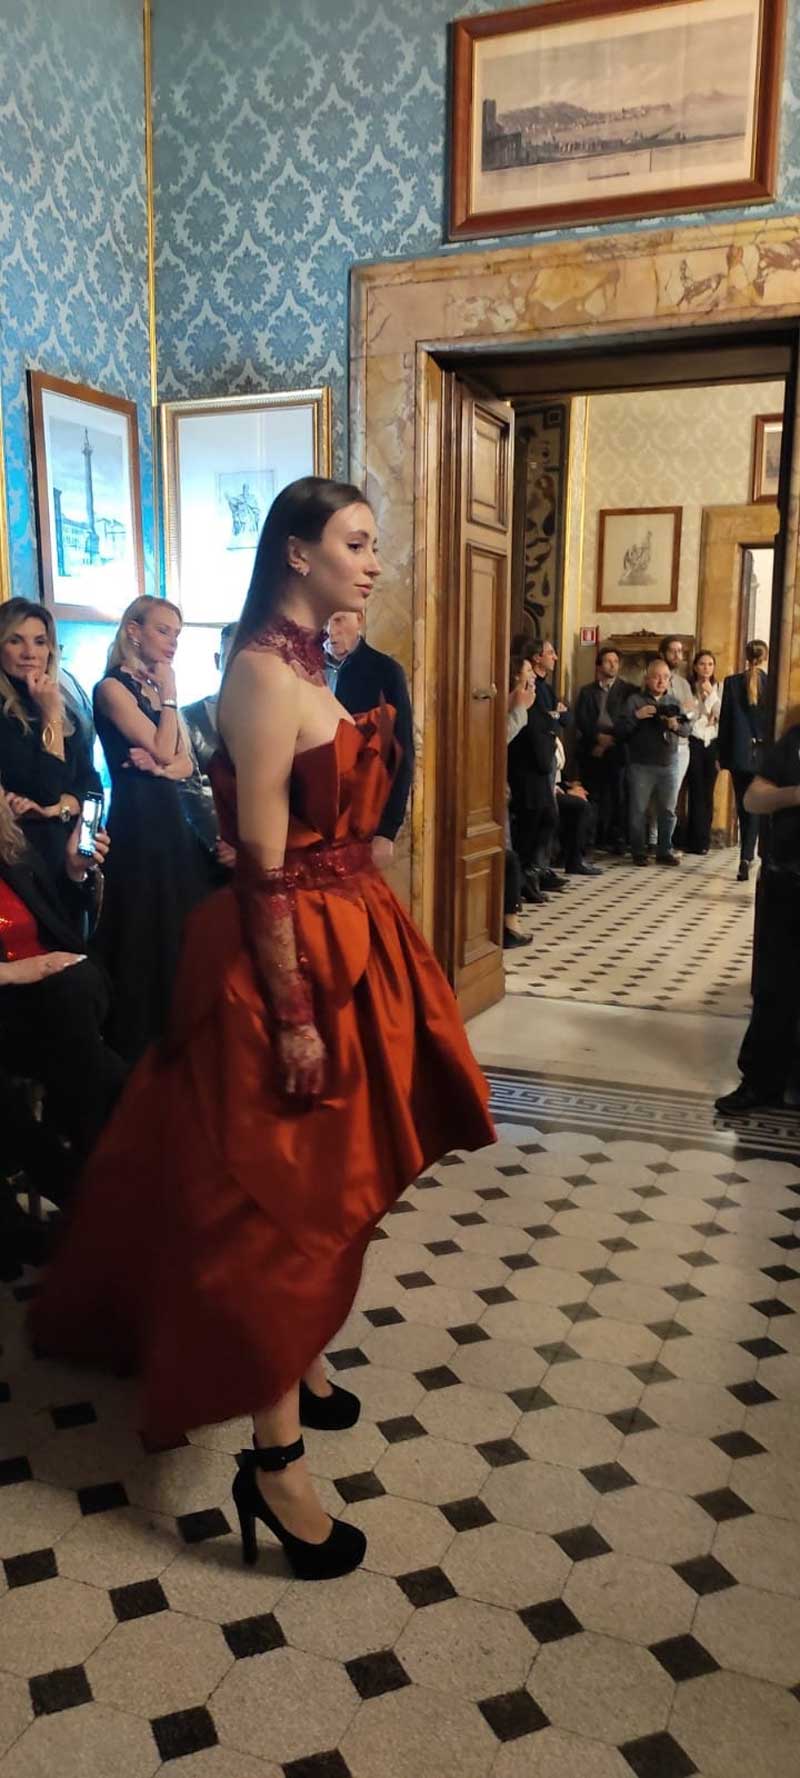 Mod’Art Roma - Il fascino dei colori - sfilata modelle nello storico Palazzo Ferrajoli - evento d’alta moda con gli eleganti abiti di Elins moda abito bruno rosso cerimonia o matrimonio